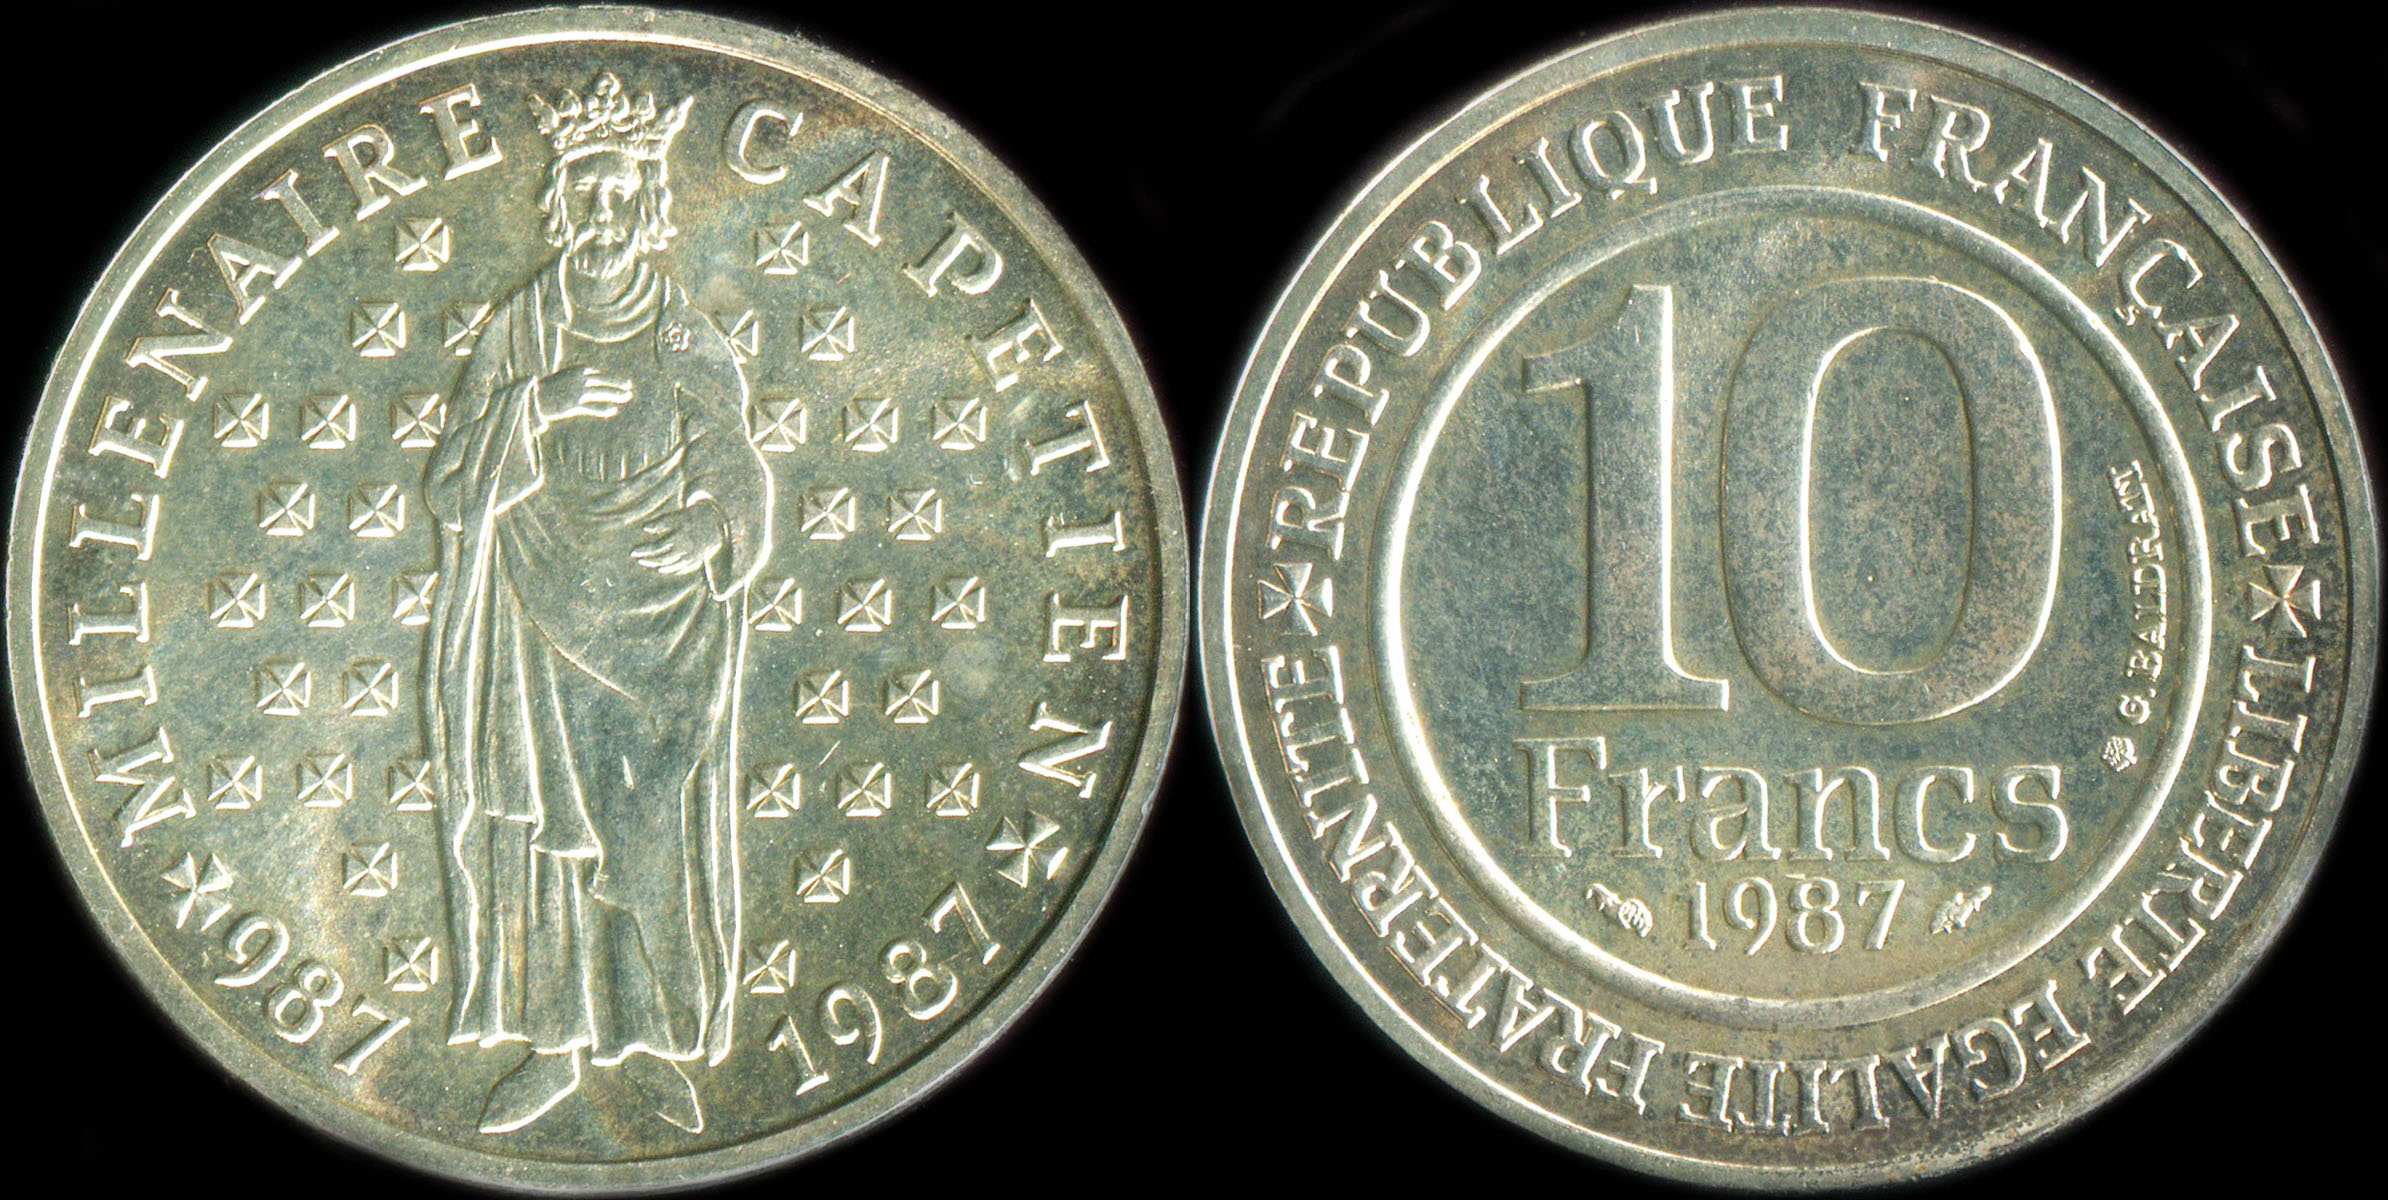 Pice de 10 francs Millnaire Captien 987-1987 - 1987 argent BU